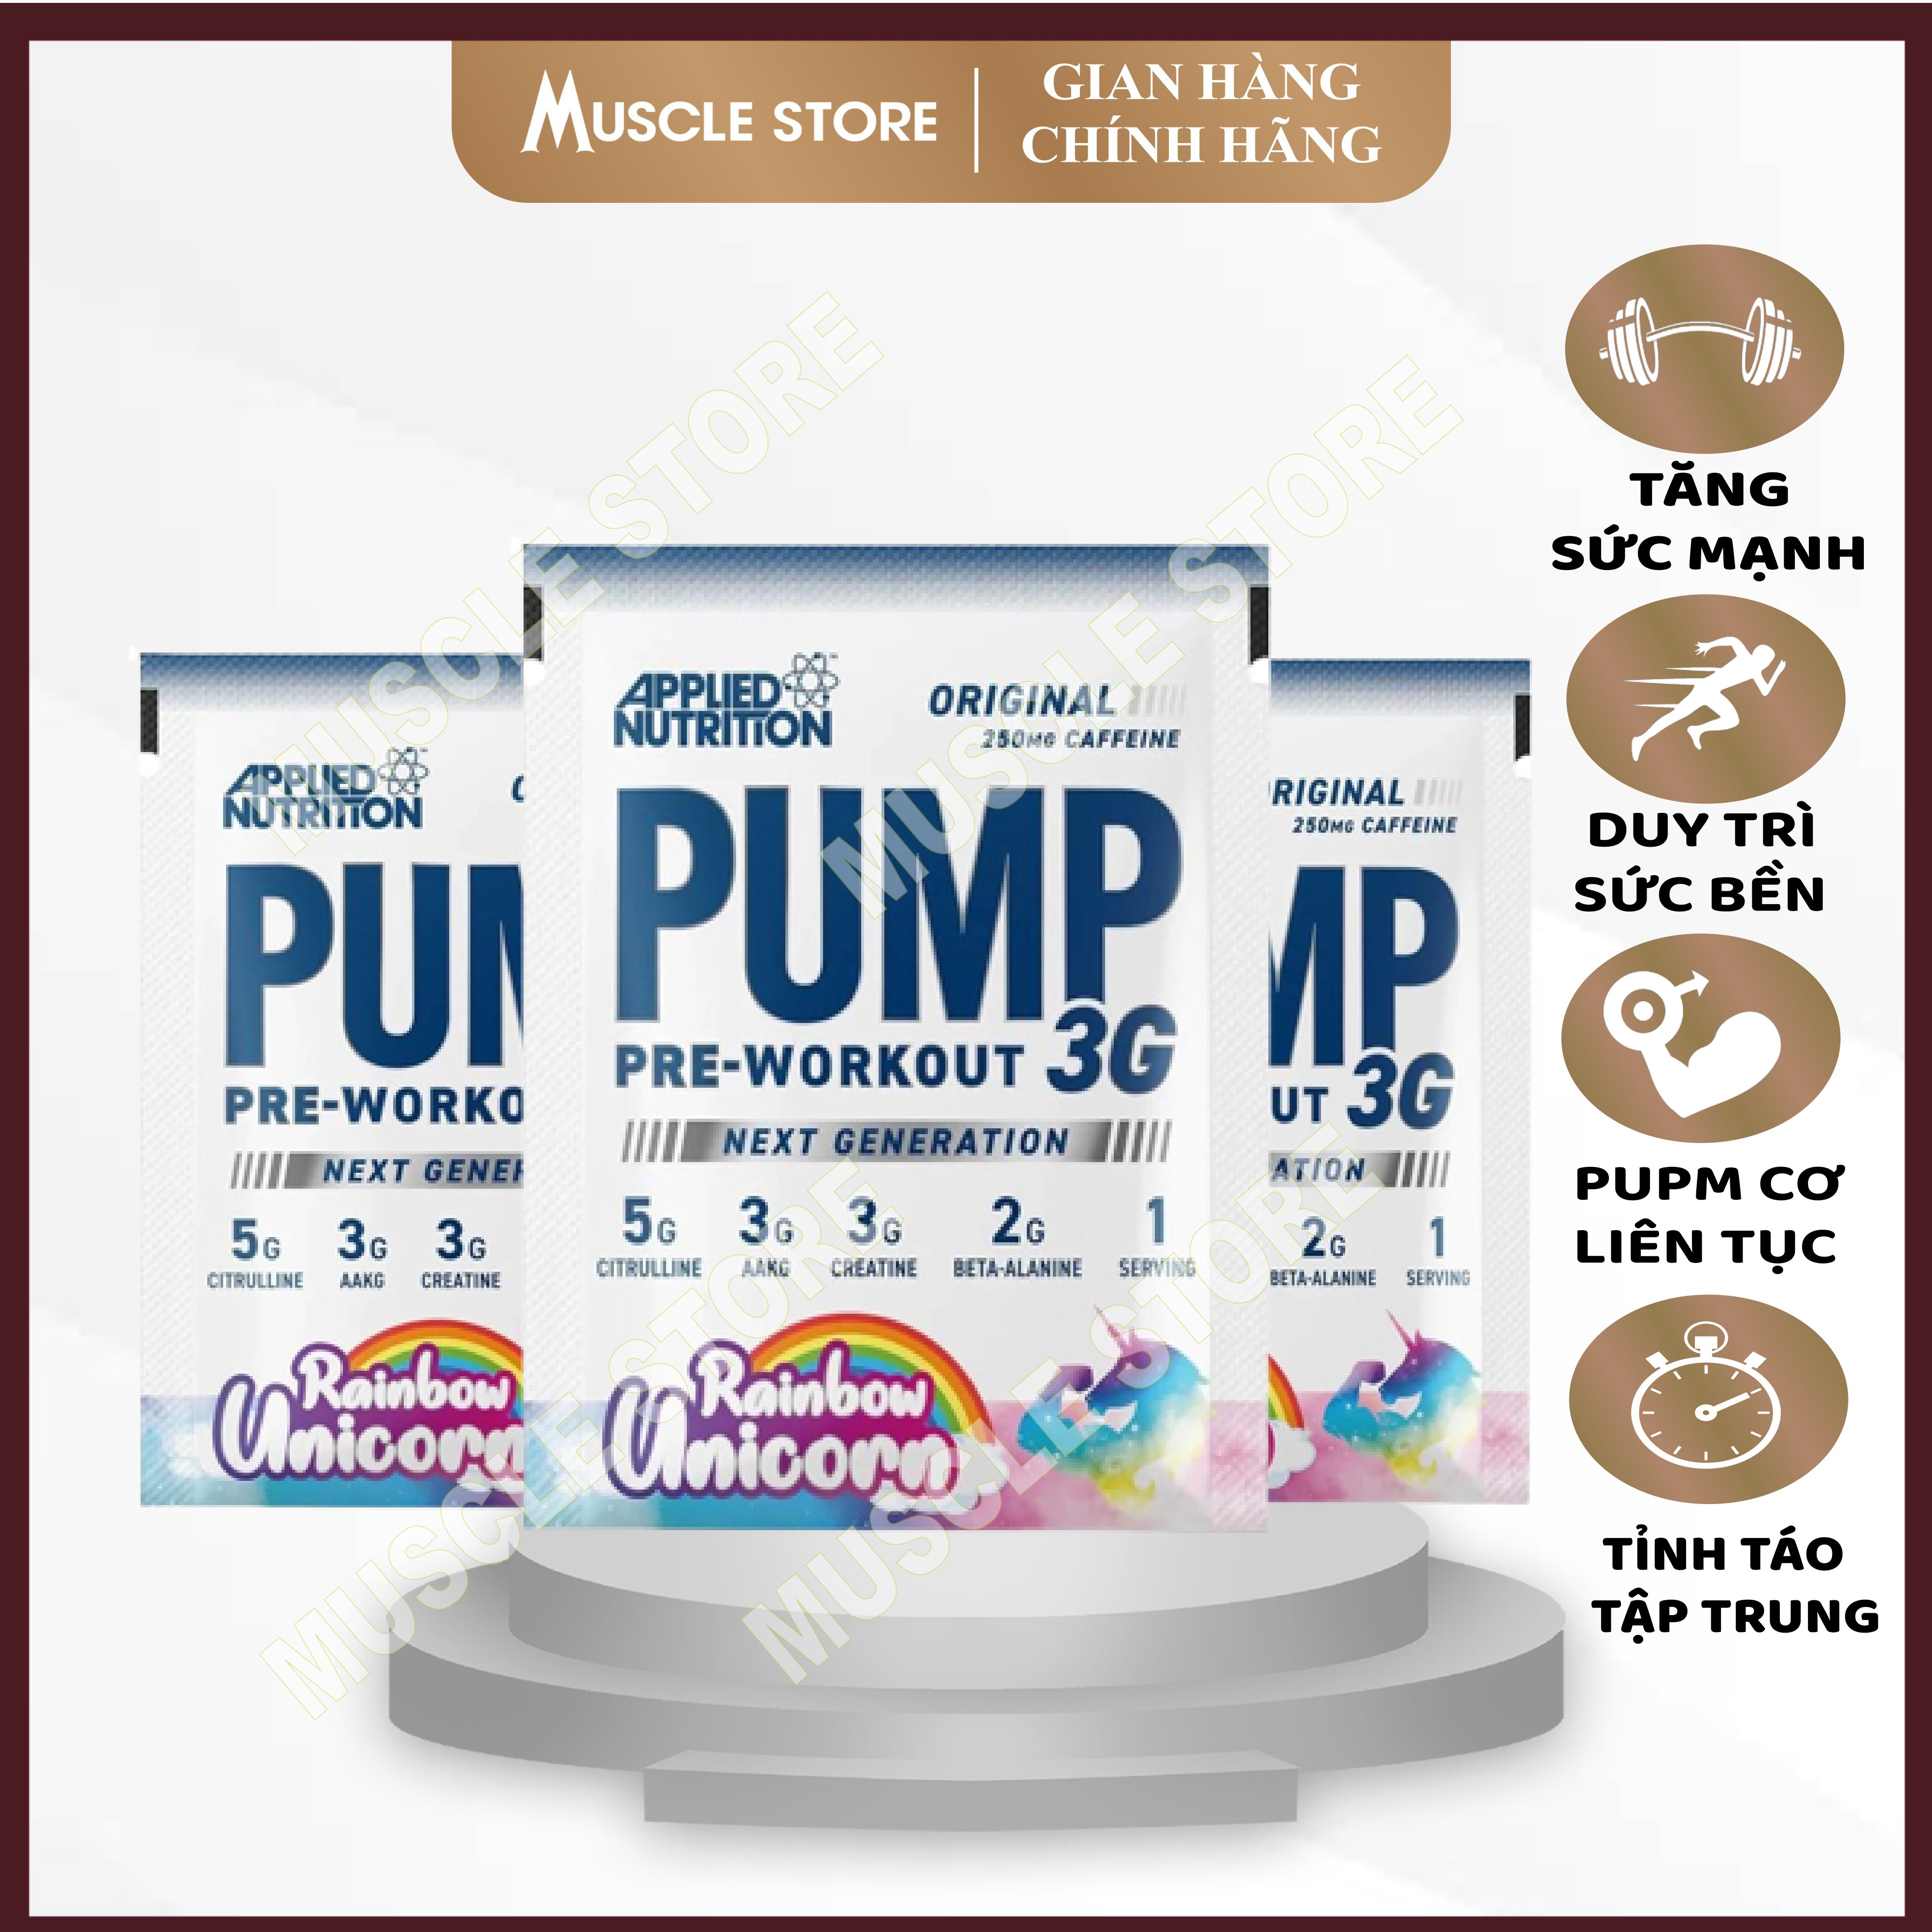 Sample PUMP 3G - Pre Workout - Applied Nutrition (1GÓI) Sản Phẩm Hỗ Trợ Tăng Sức Mạnh, Tập Trung Tỉnh...